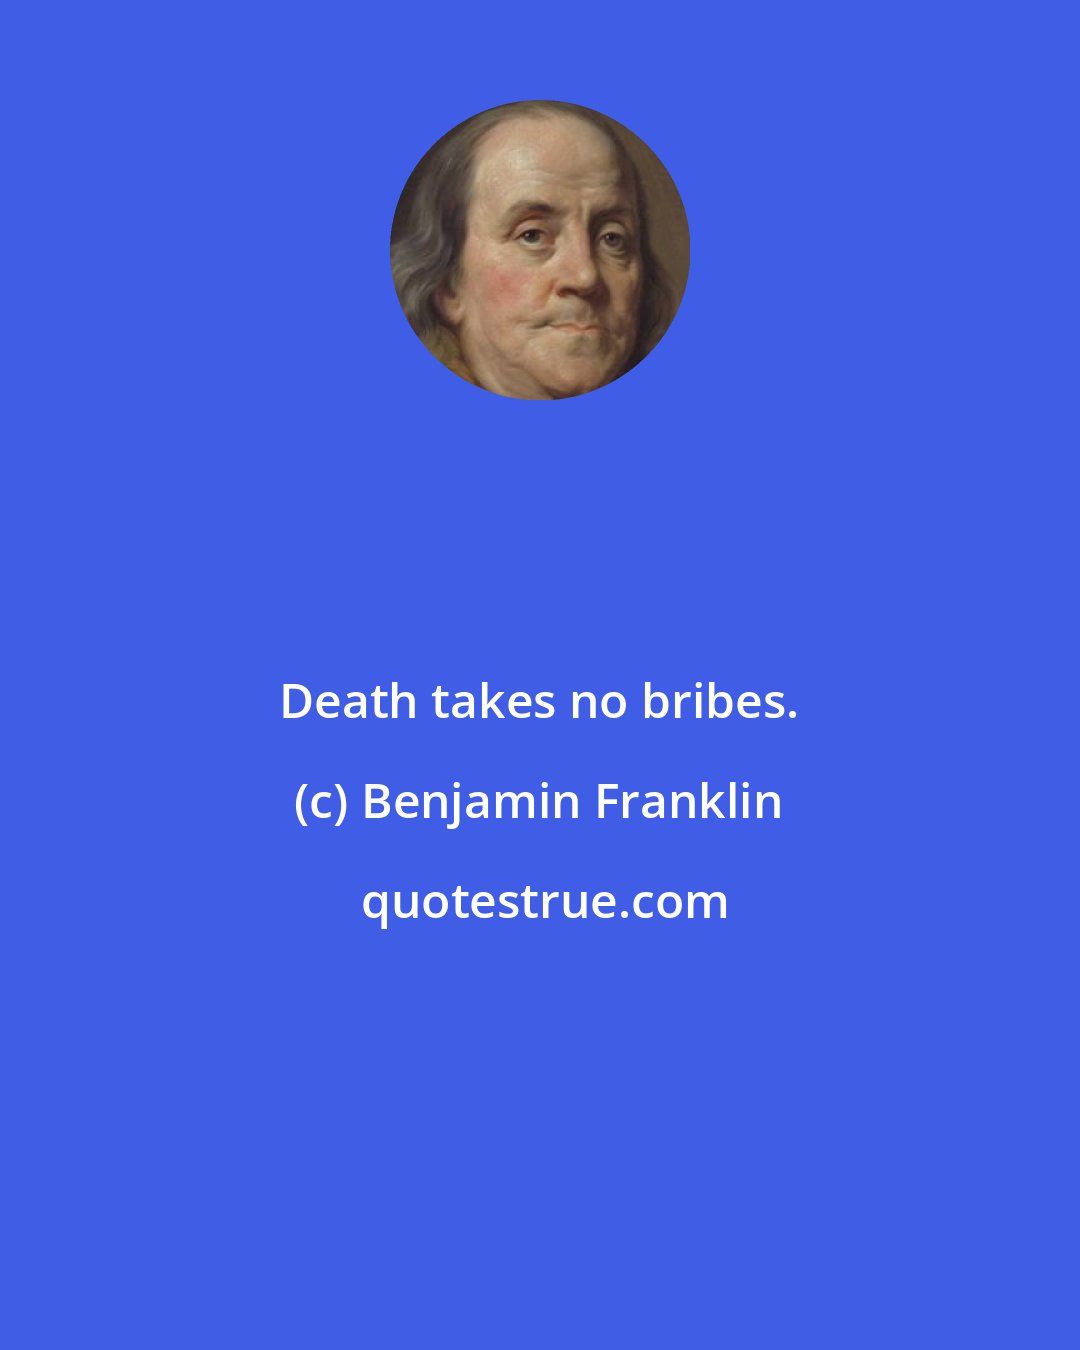 Benjamin Franklin: Death takes no bribes.